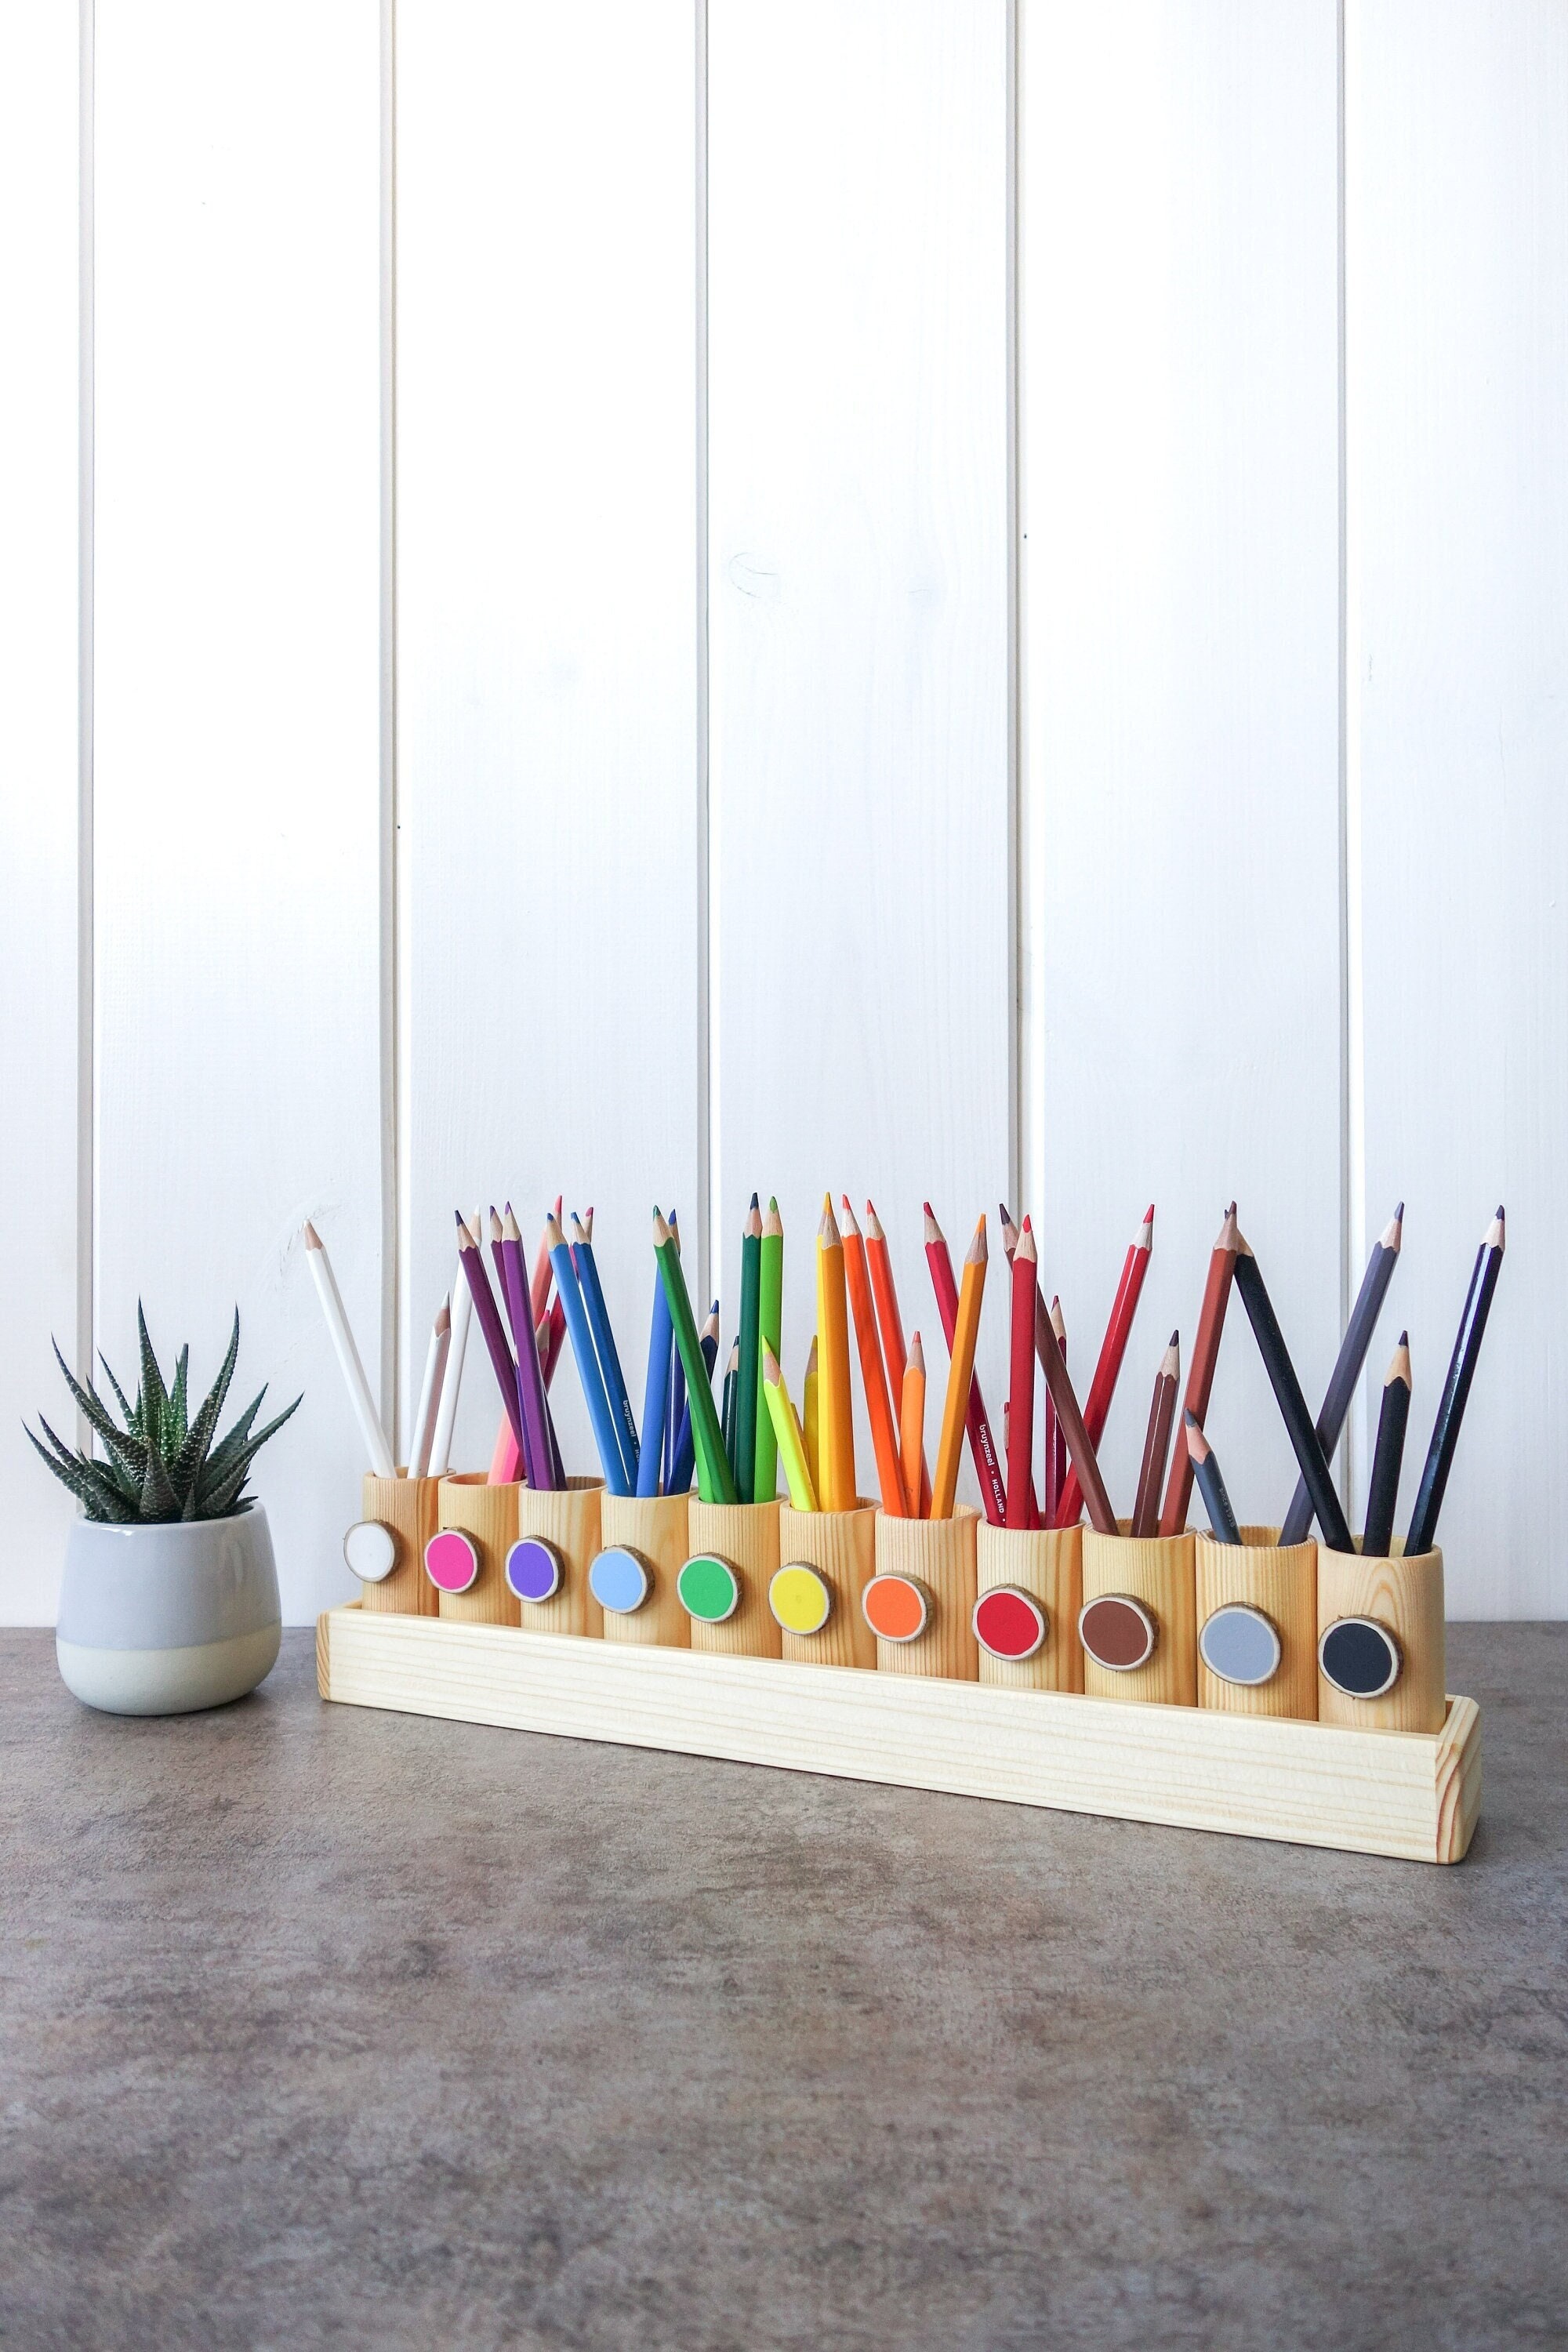 Porte-crayon en bois avec 11 pots à crayons (11 couleurs) - People&baby